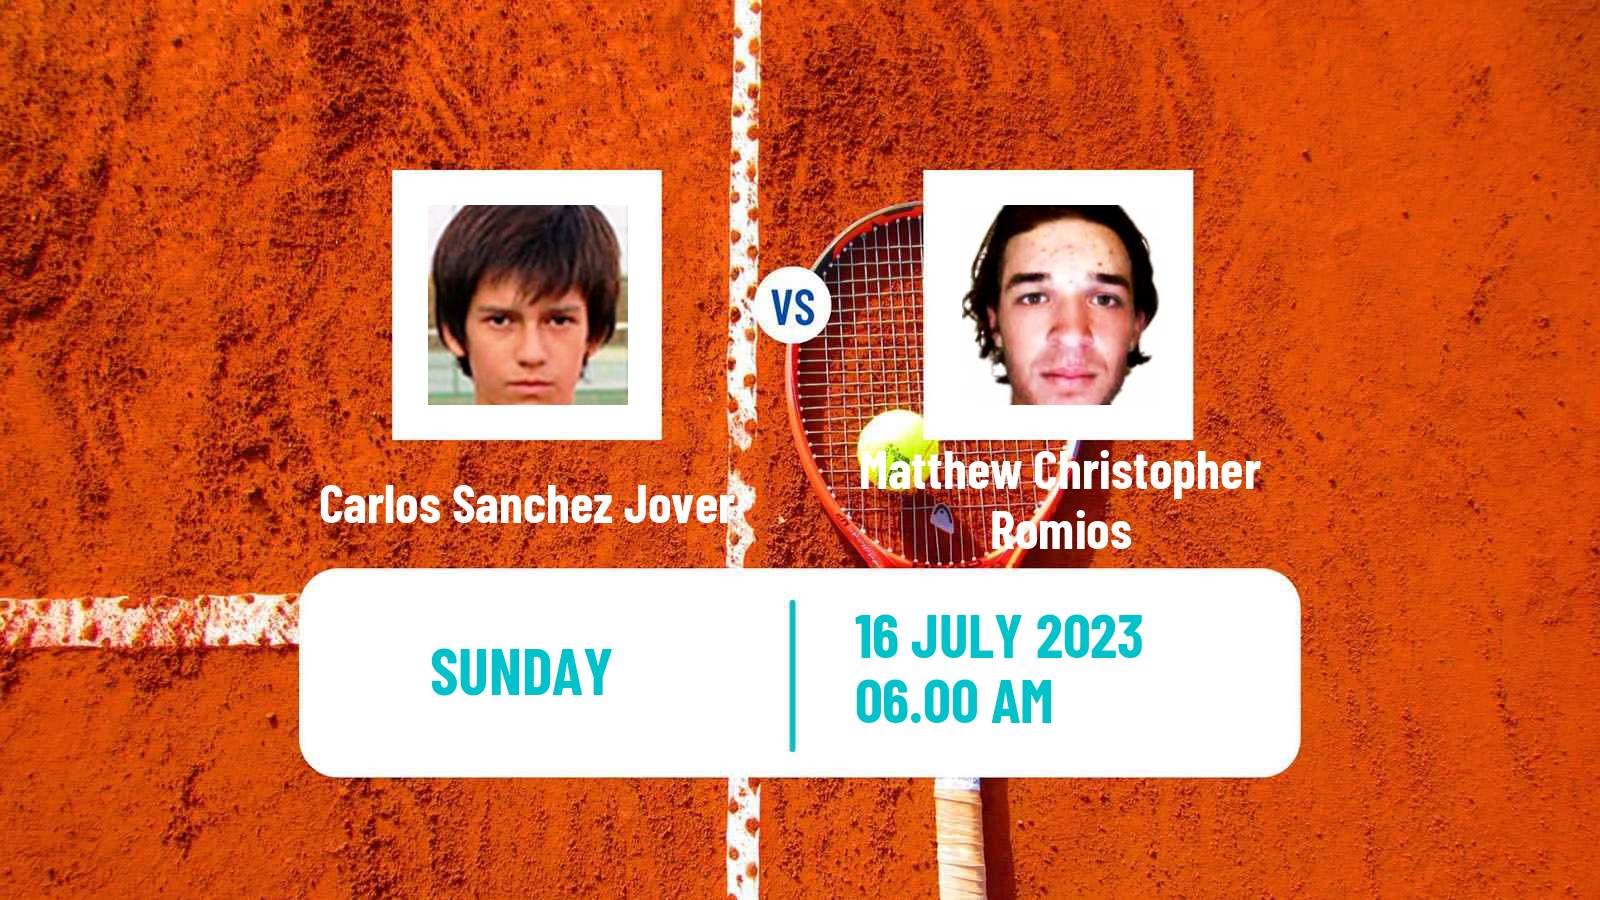 Tennis Trieste Challenger Men Carlos Sanchez Jover - Matthew Christopher Romios